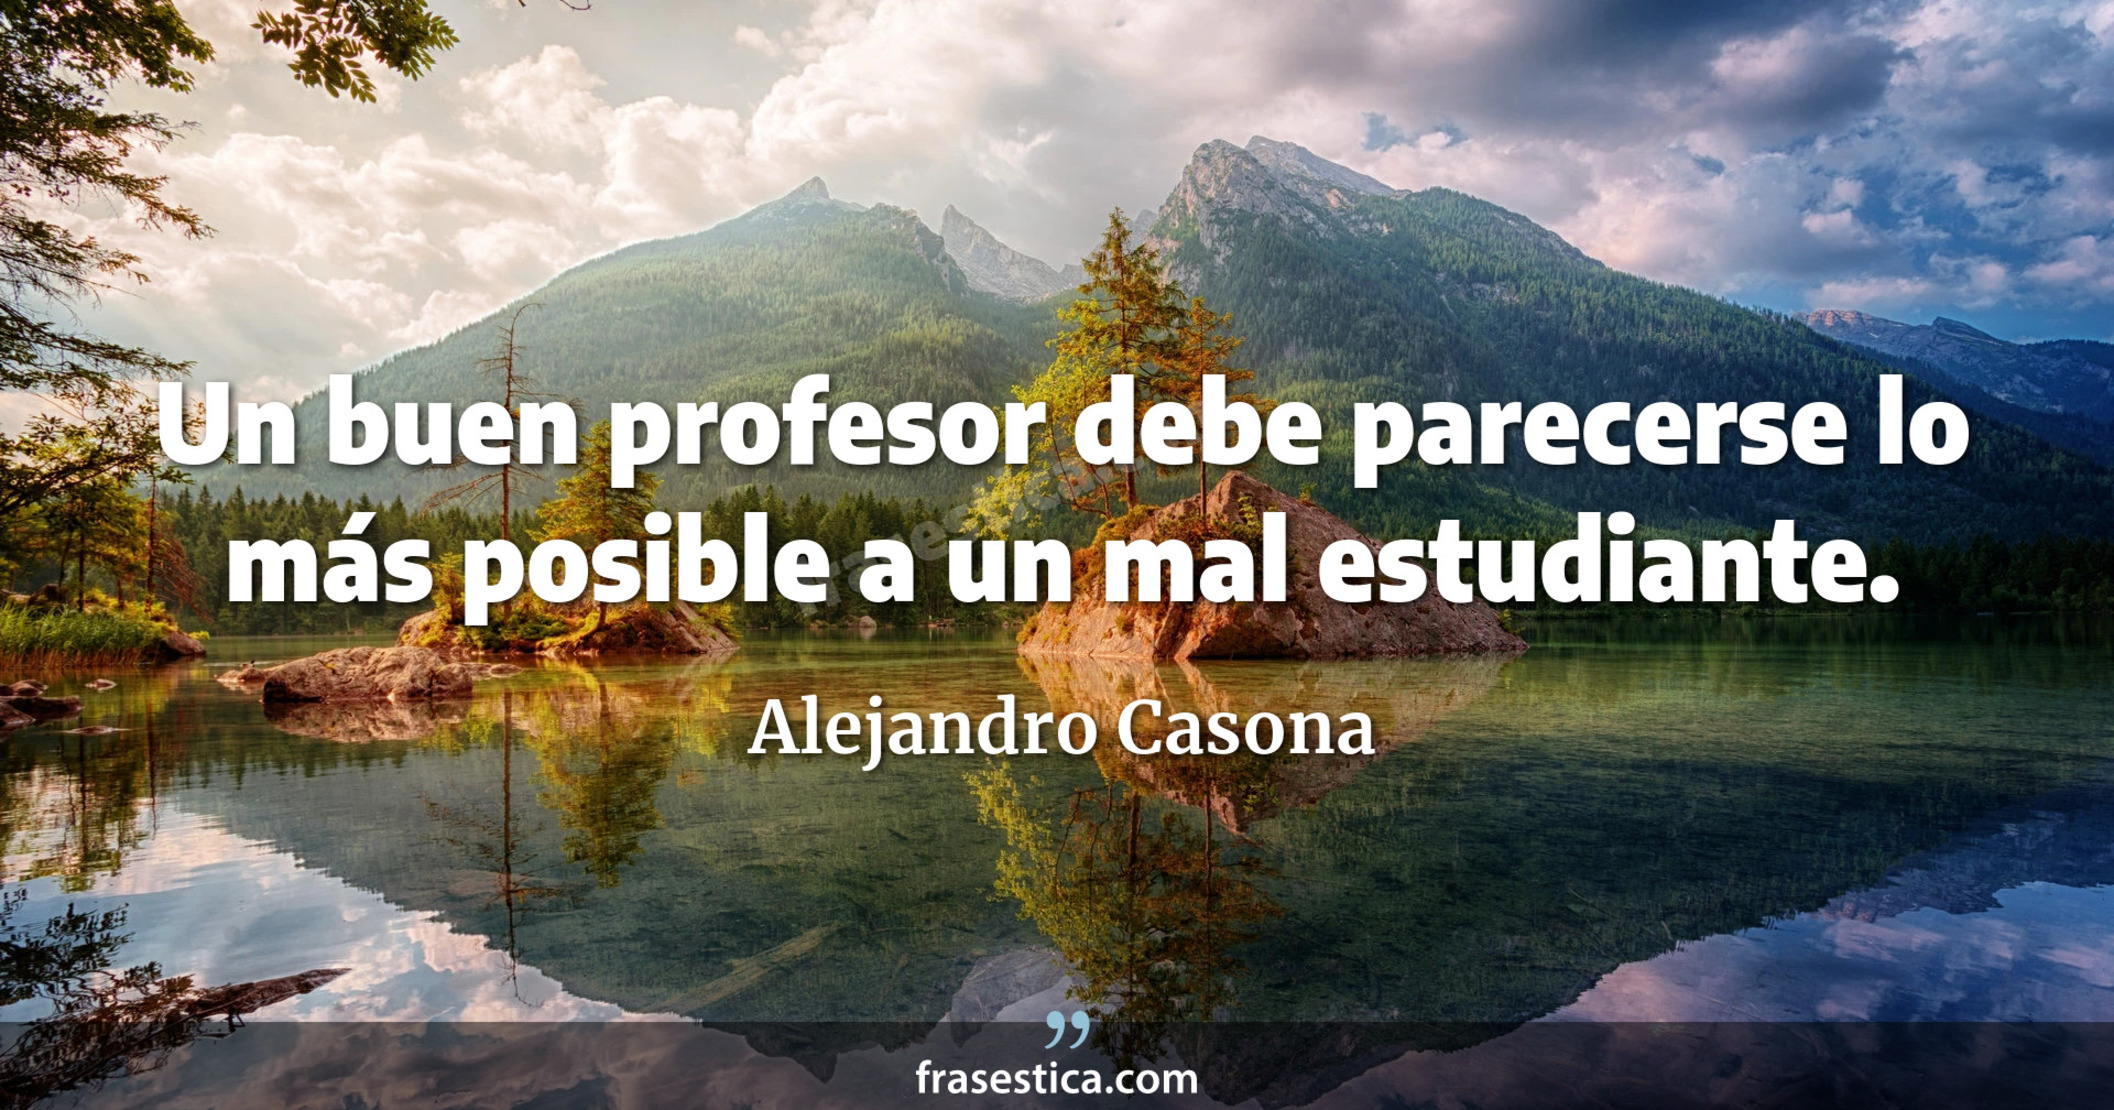 Un buen profesor debe parecerse lo más posible a un mal estudiante. - Alejandro Casona